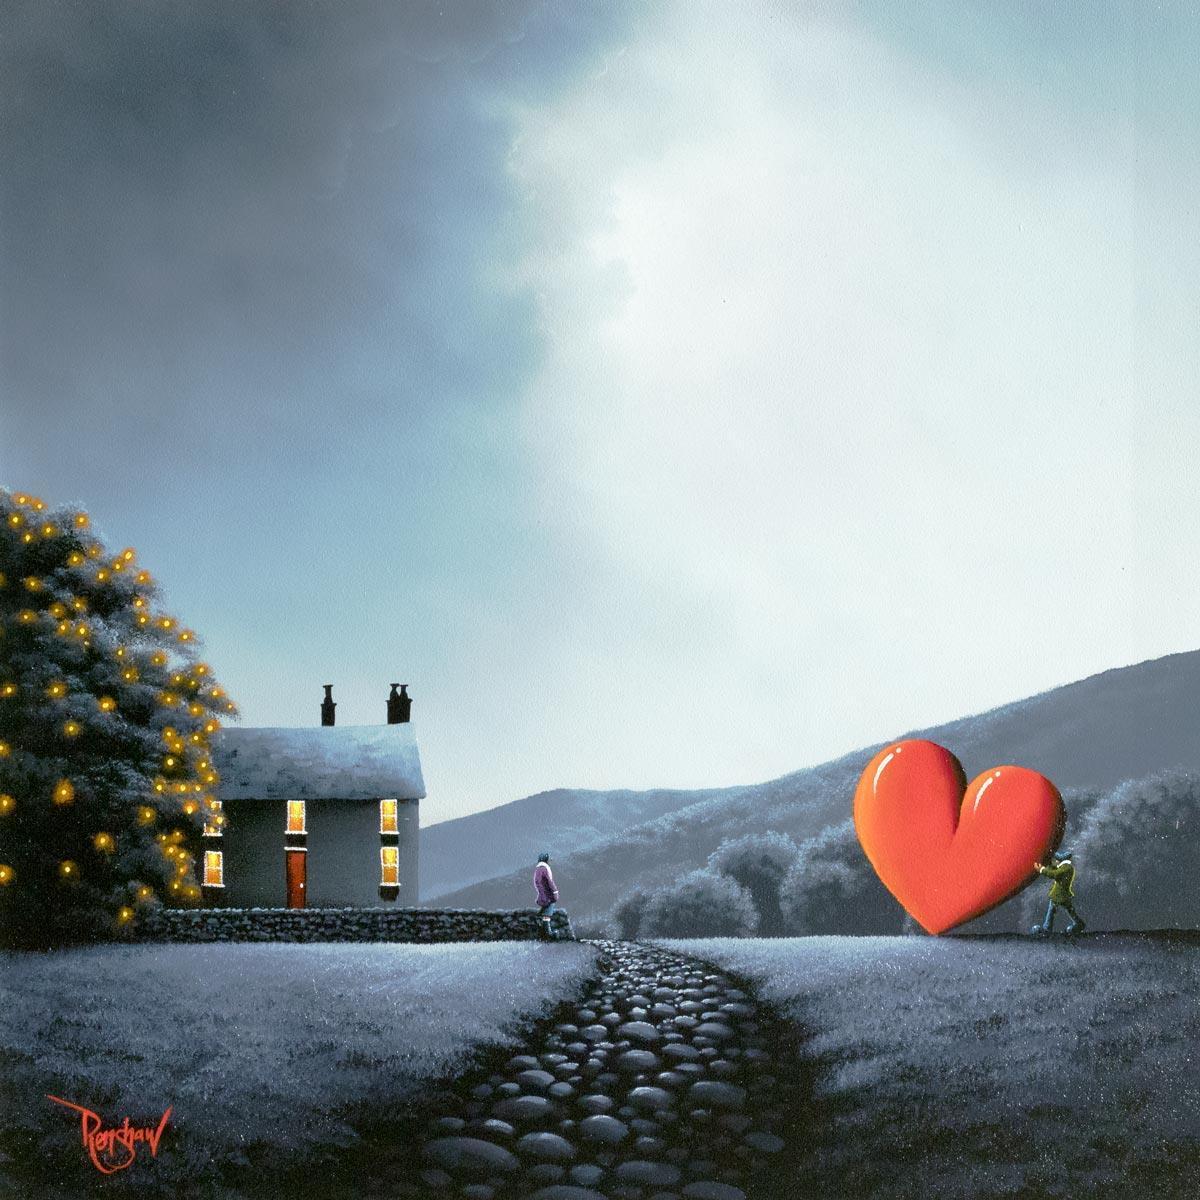 A Home Full Of Love - Original David Renshaw